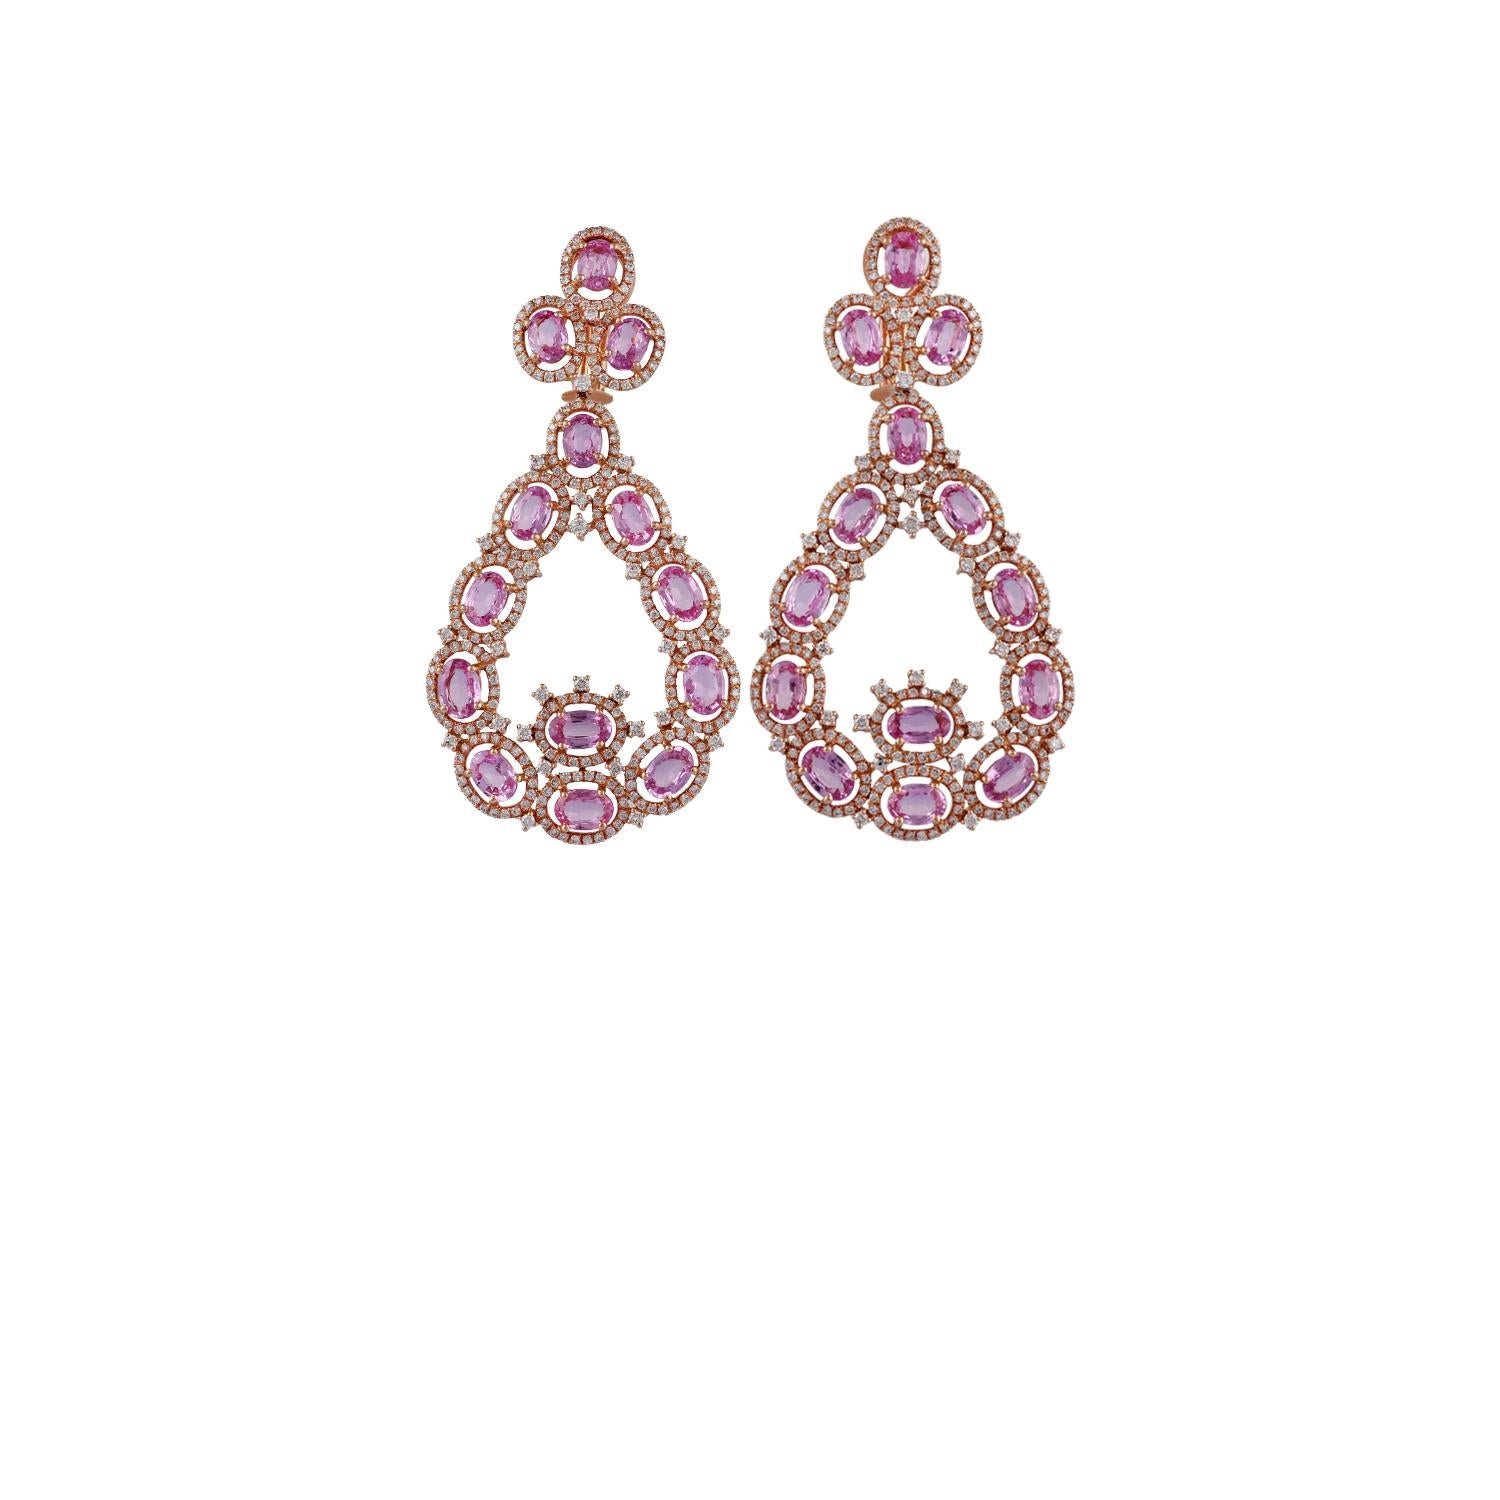 Dies sind exklusive Designer-Ohrringe in 18K Roségold besetzt, verfügt über 28 Stück oval geformten rosa Saphiren Gewicht 15,70 Karat & 614 Stück rund geformten Diamanten Gewicht 3,60 Karat, die gesamte Ohrringe sind in 18K Roségold Gewicht 17,78